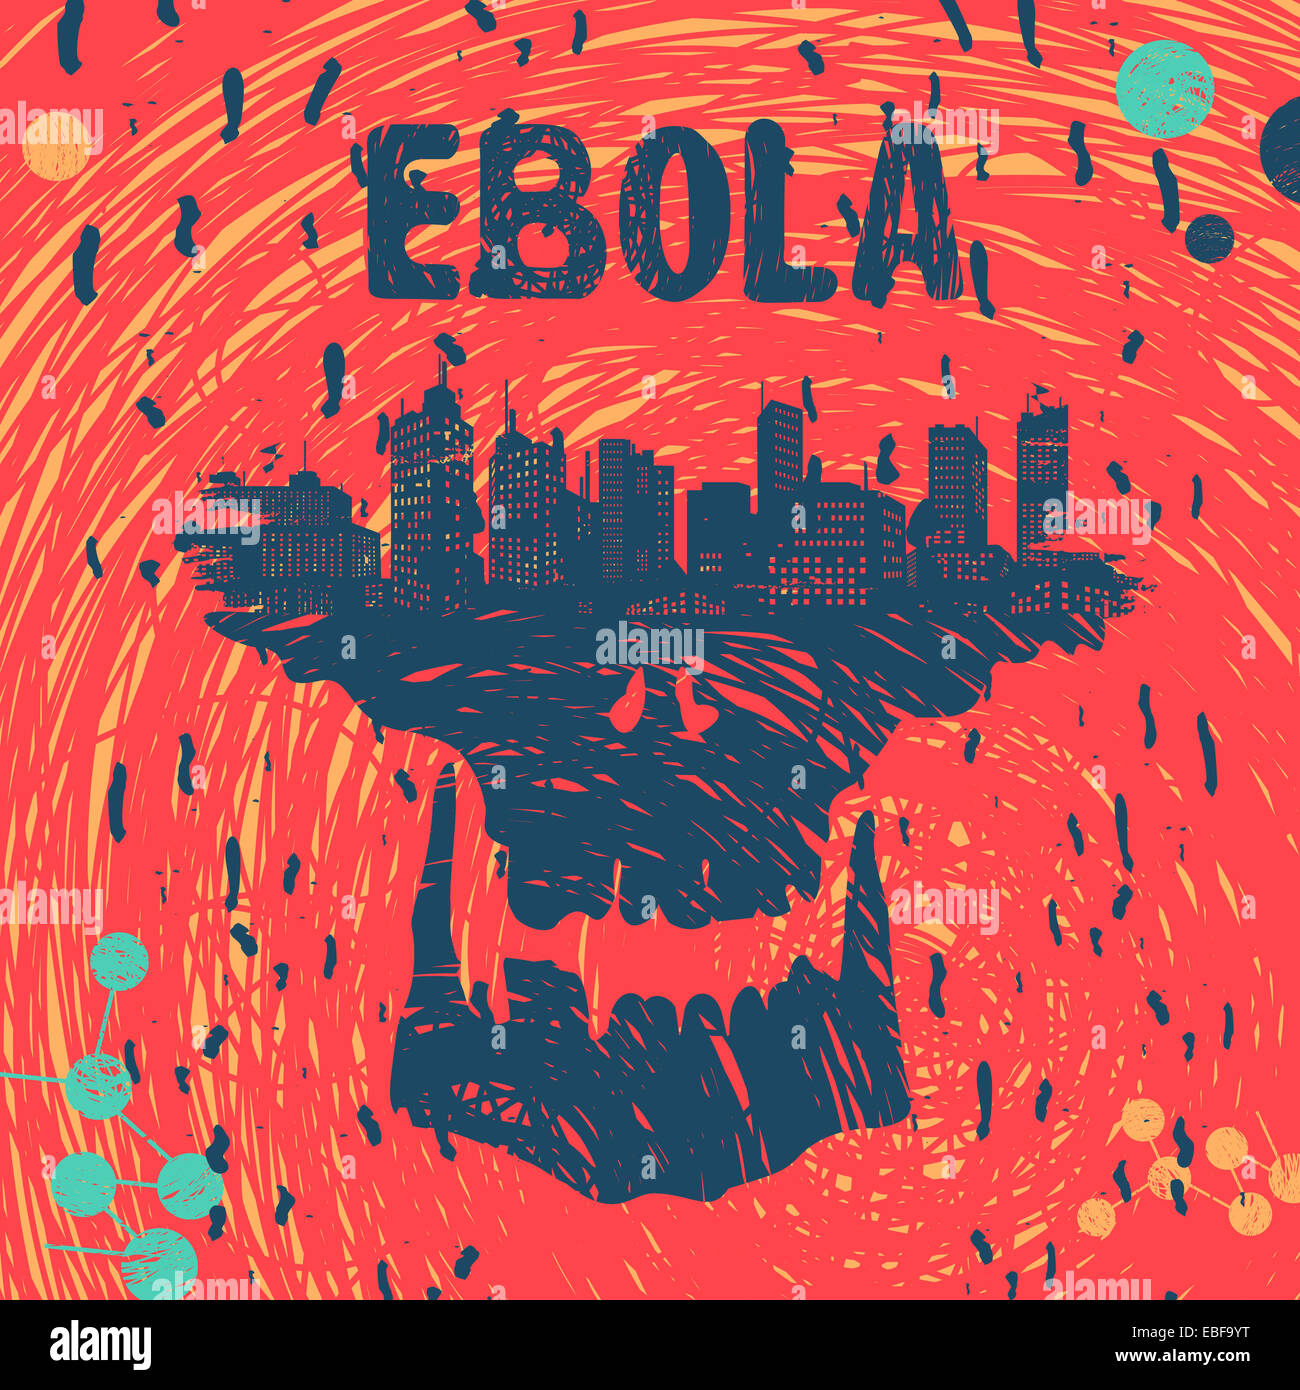 Ebola virus symbol eps 8 file format Stock Photo